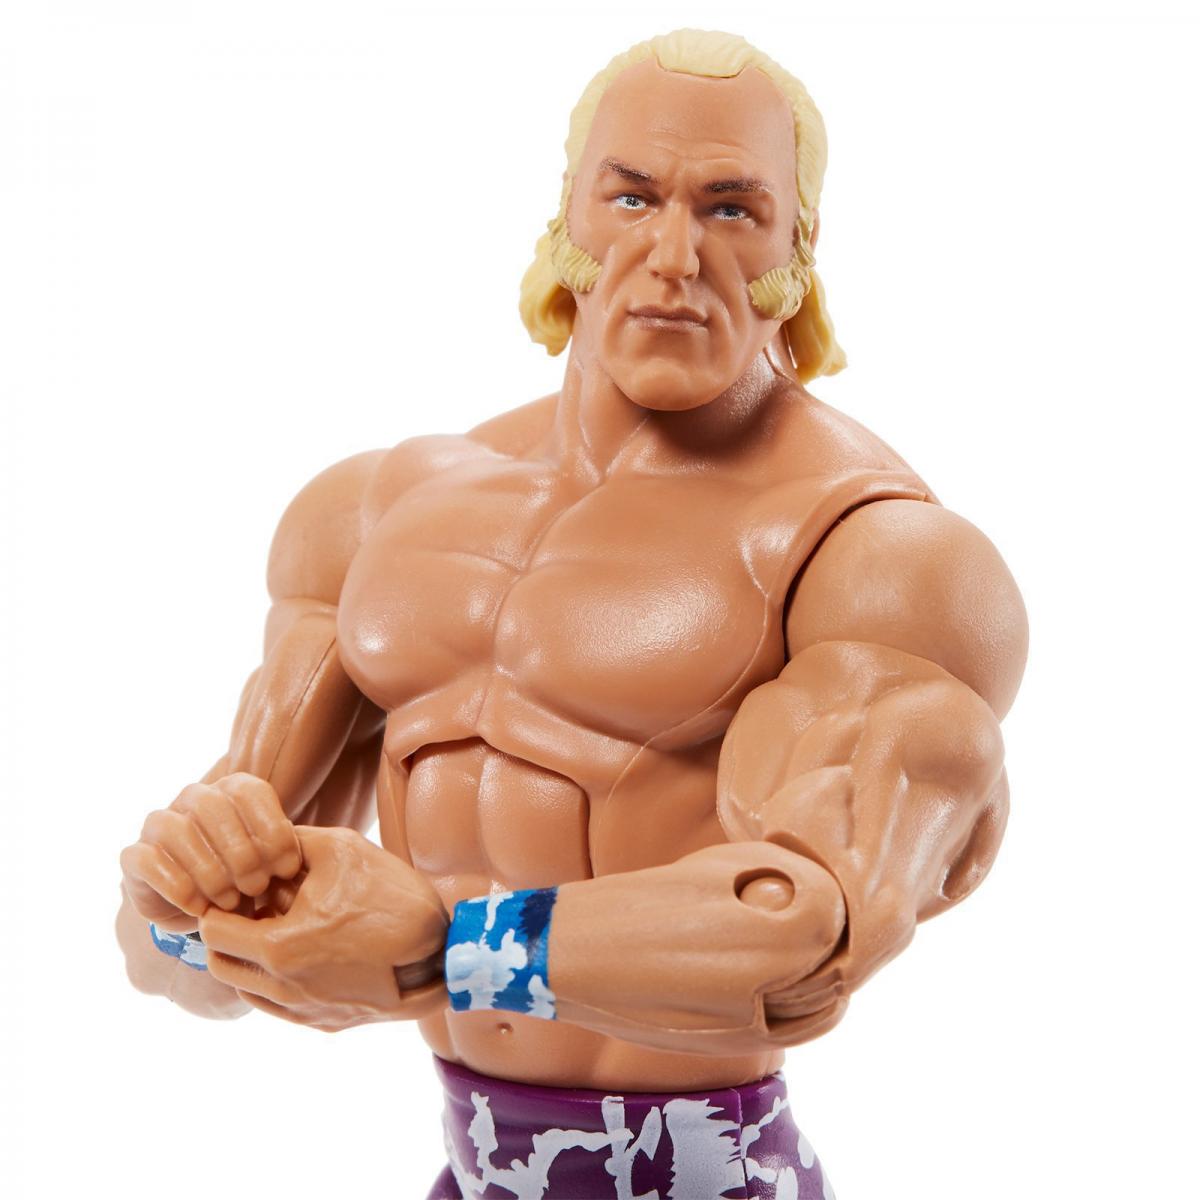 2020 WWE Mattel Elite Collection Series 78 "Superstar" Billy Graham [Exclusive]